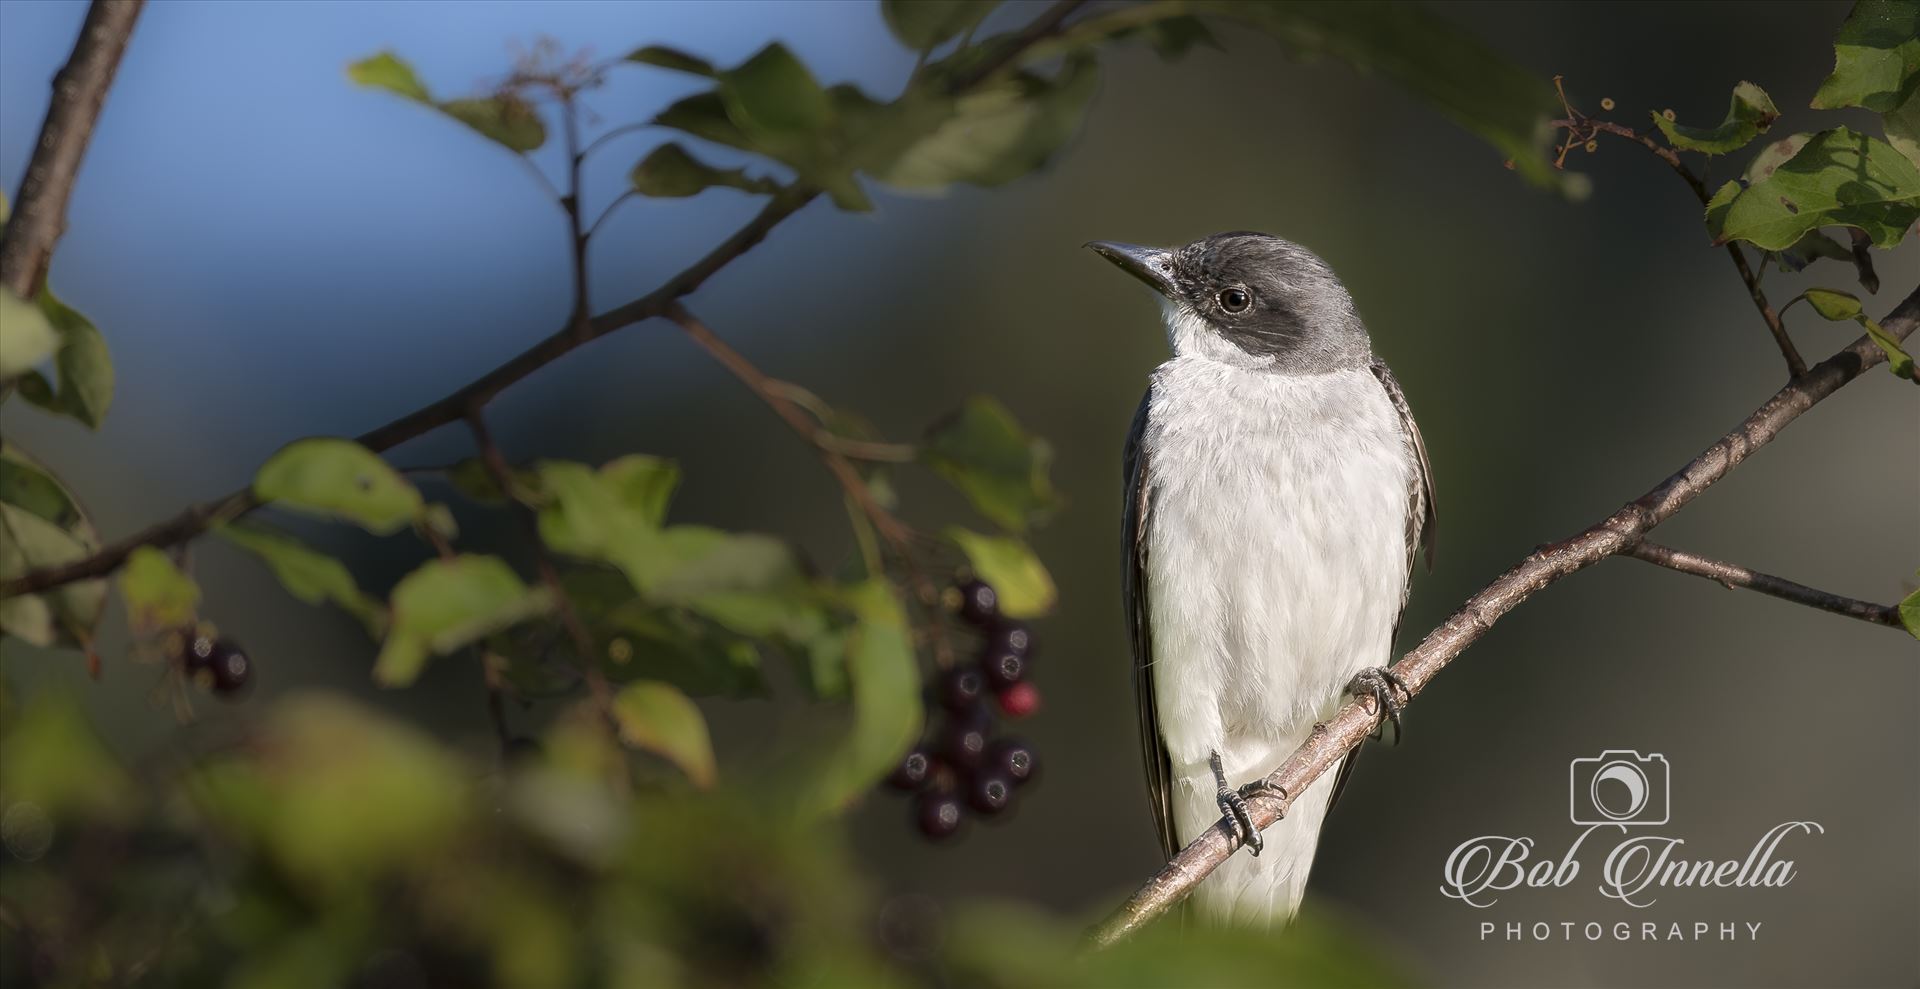 Kingbird in Berries-1-1.JPG -  by Buckmaster